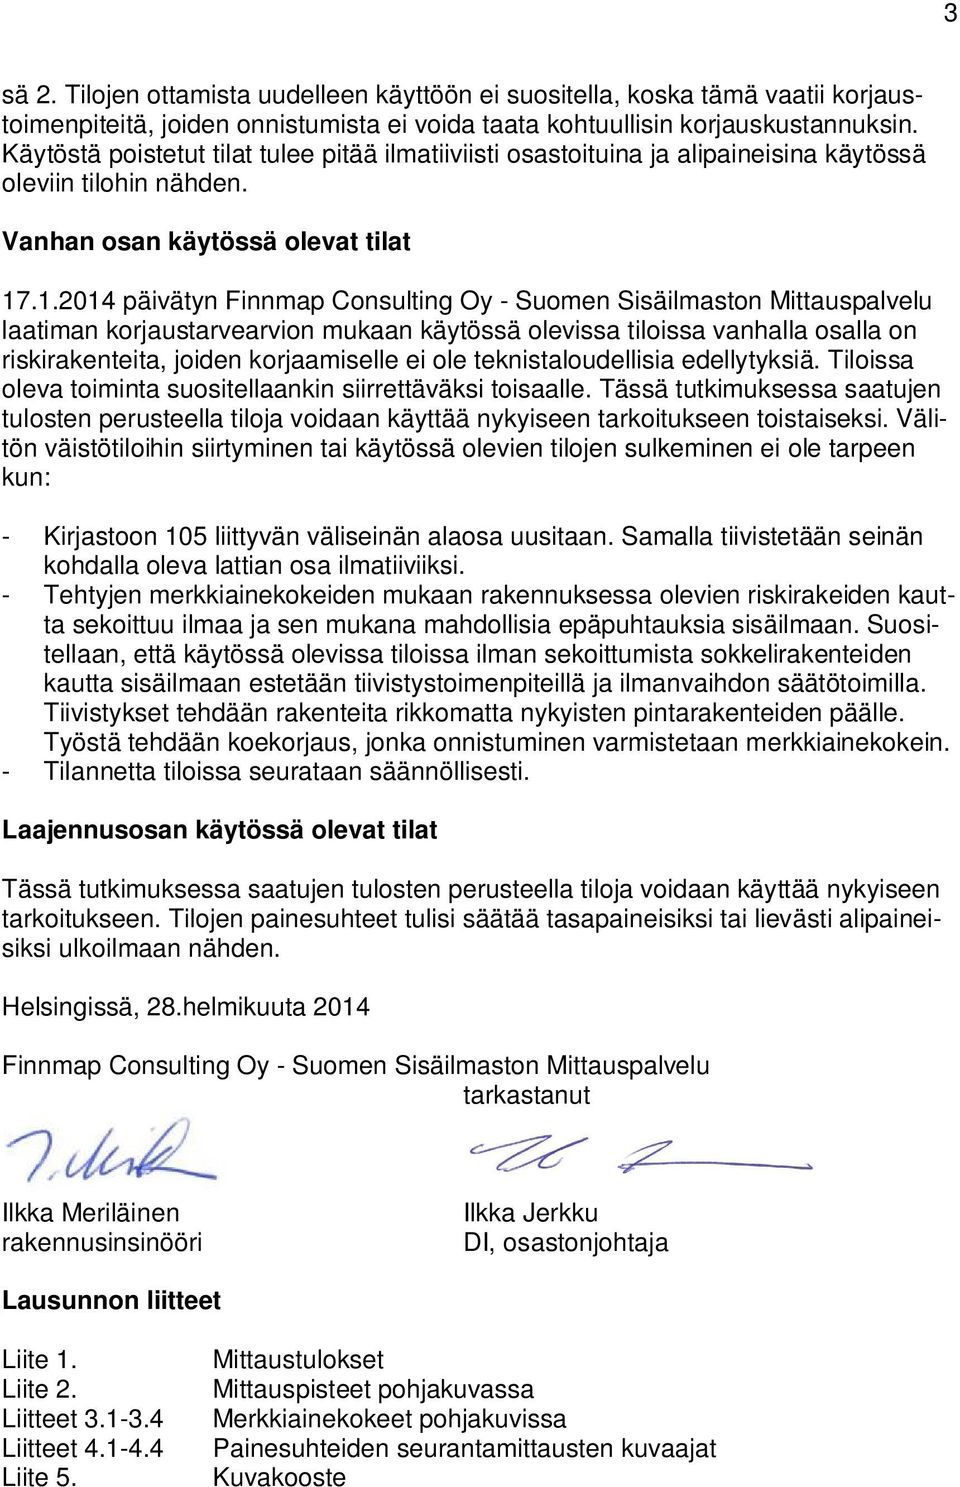 .1.2014 päivätyn Finnmap Consulting Oy - Suomen Sisäilmaston Mittauspalvelu laatiman korjaustarvearvion mukaan käytössä olevissa tiloissa vanhalla osalla on riskirakenteita, joiden korjaamiselle ei